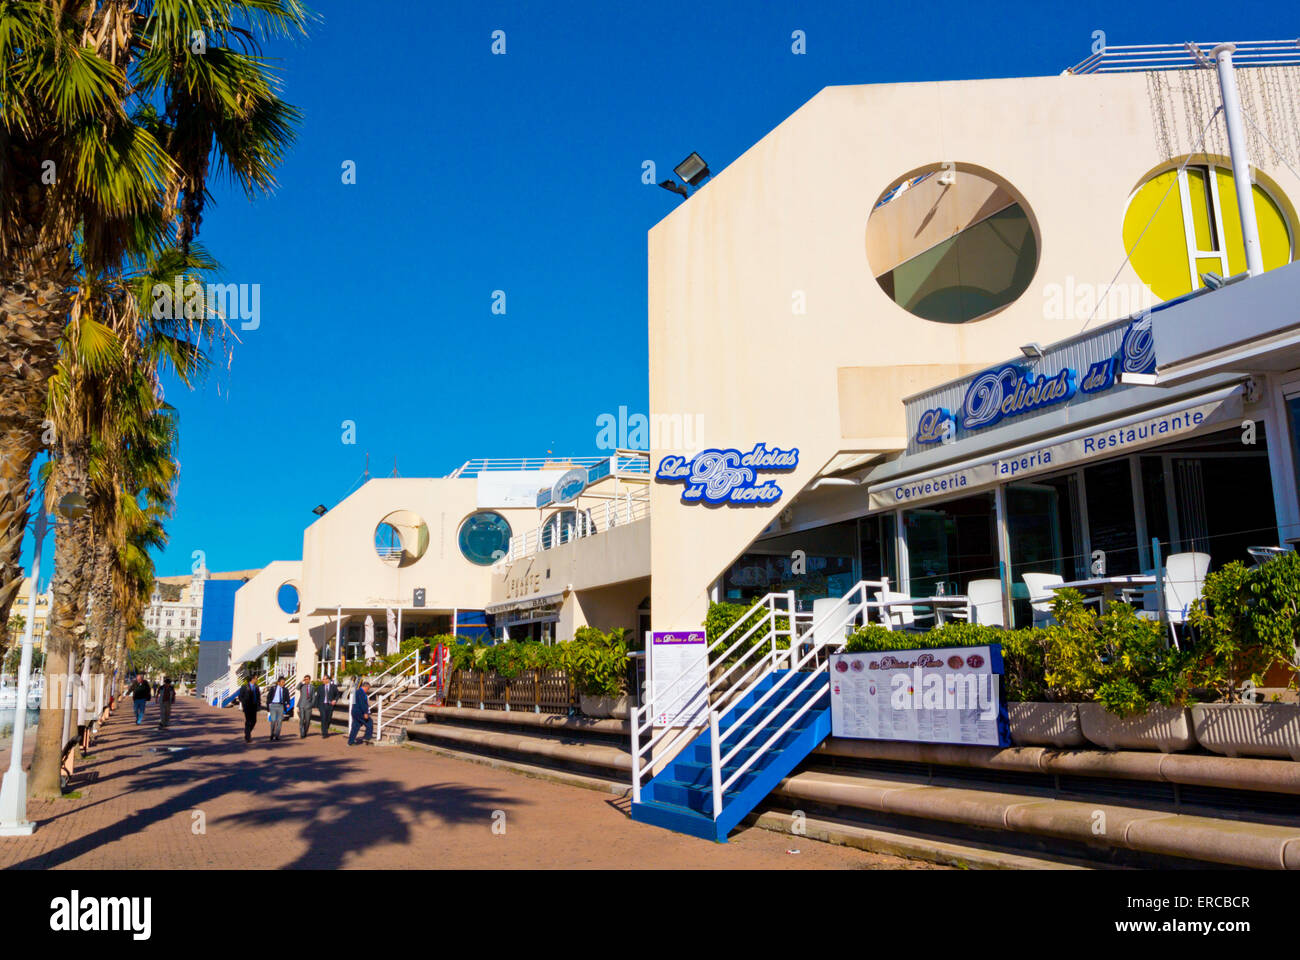 Ristorante, marina, porto per yacht, Alicante, Alacant, Costa Blanca, Spagna Foto Stock